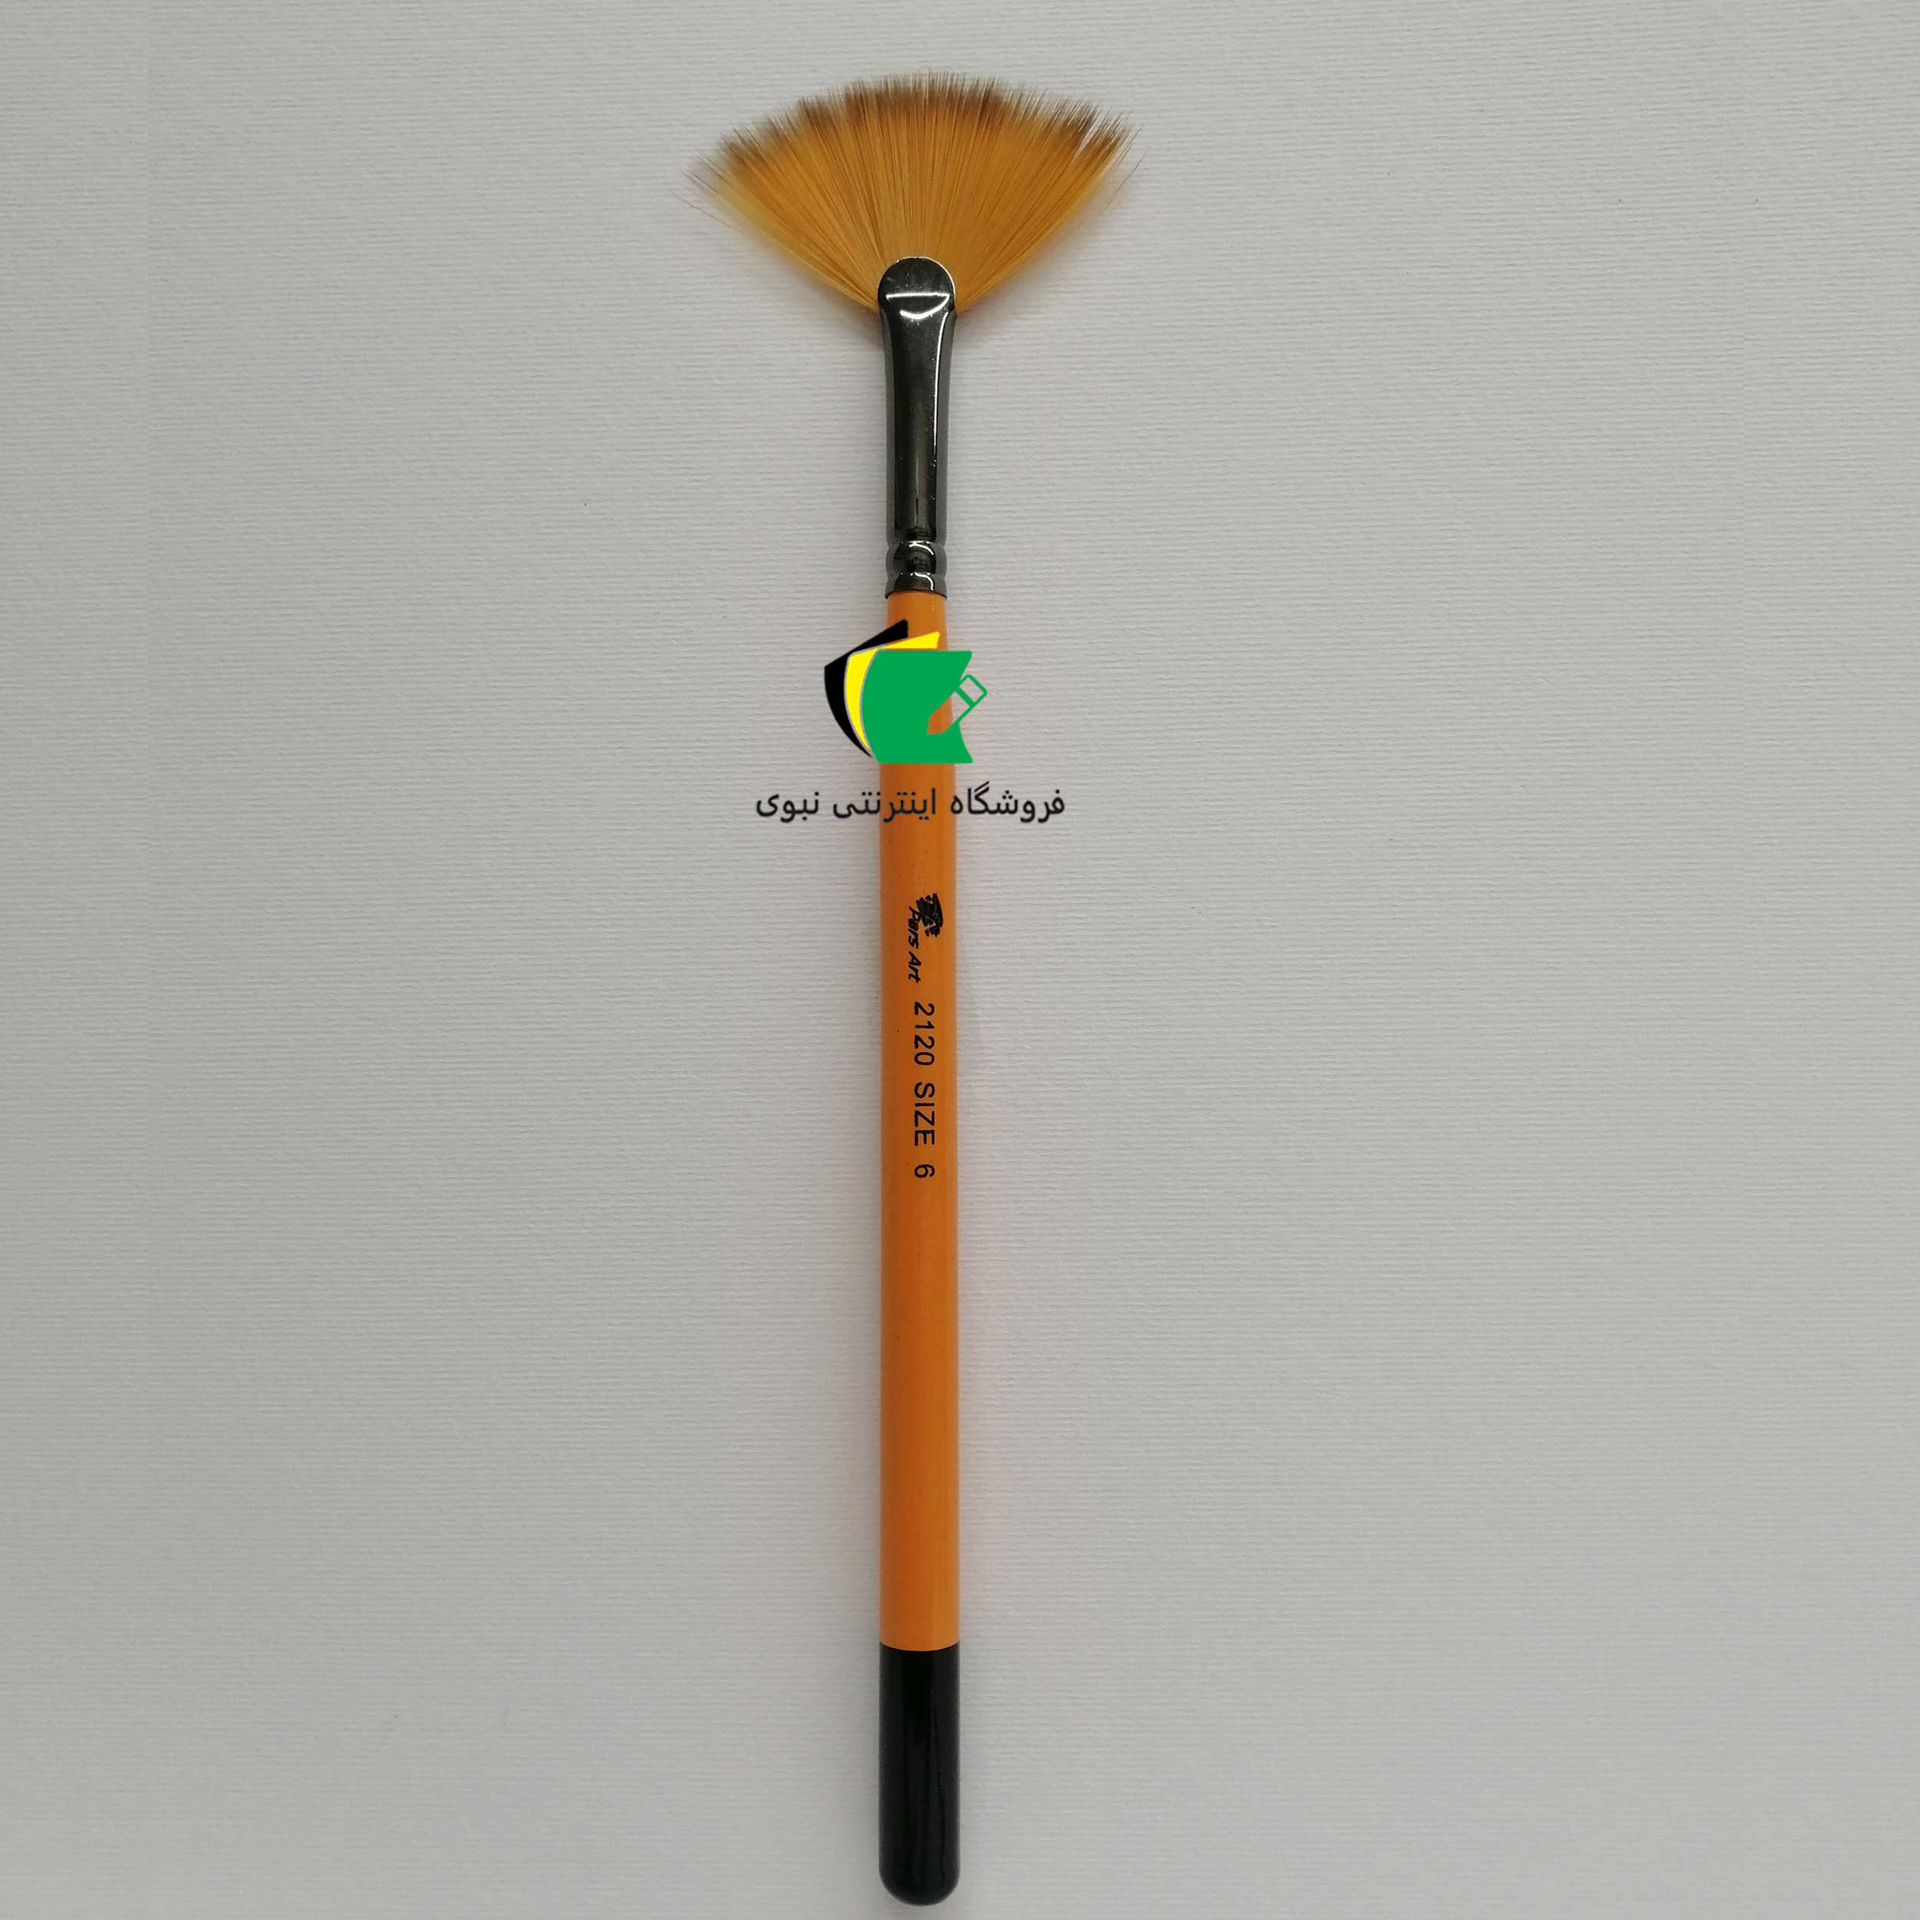 قلمو بادبزنی پارس آرت مدل قلم مو چتری پارس آرت 2120 شماره 6